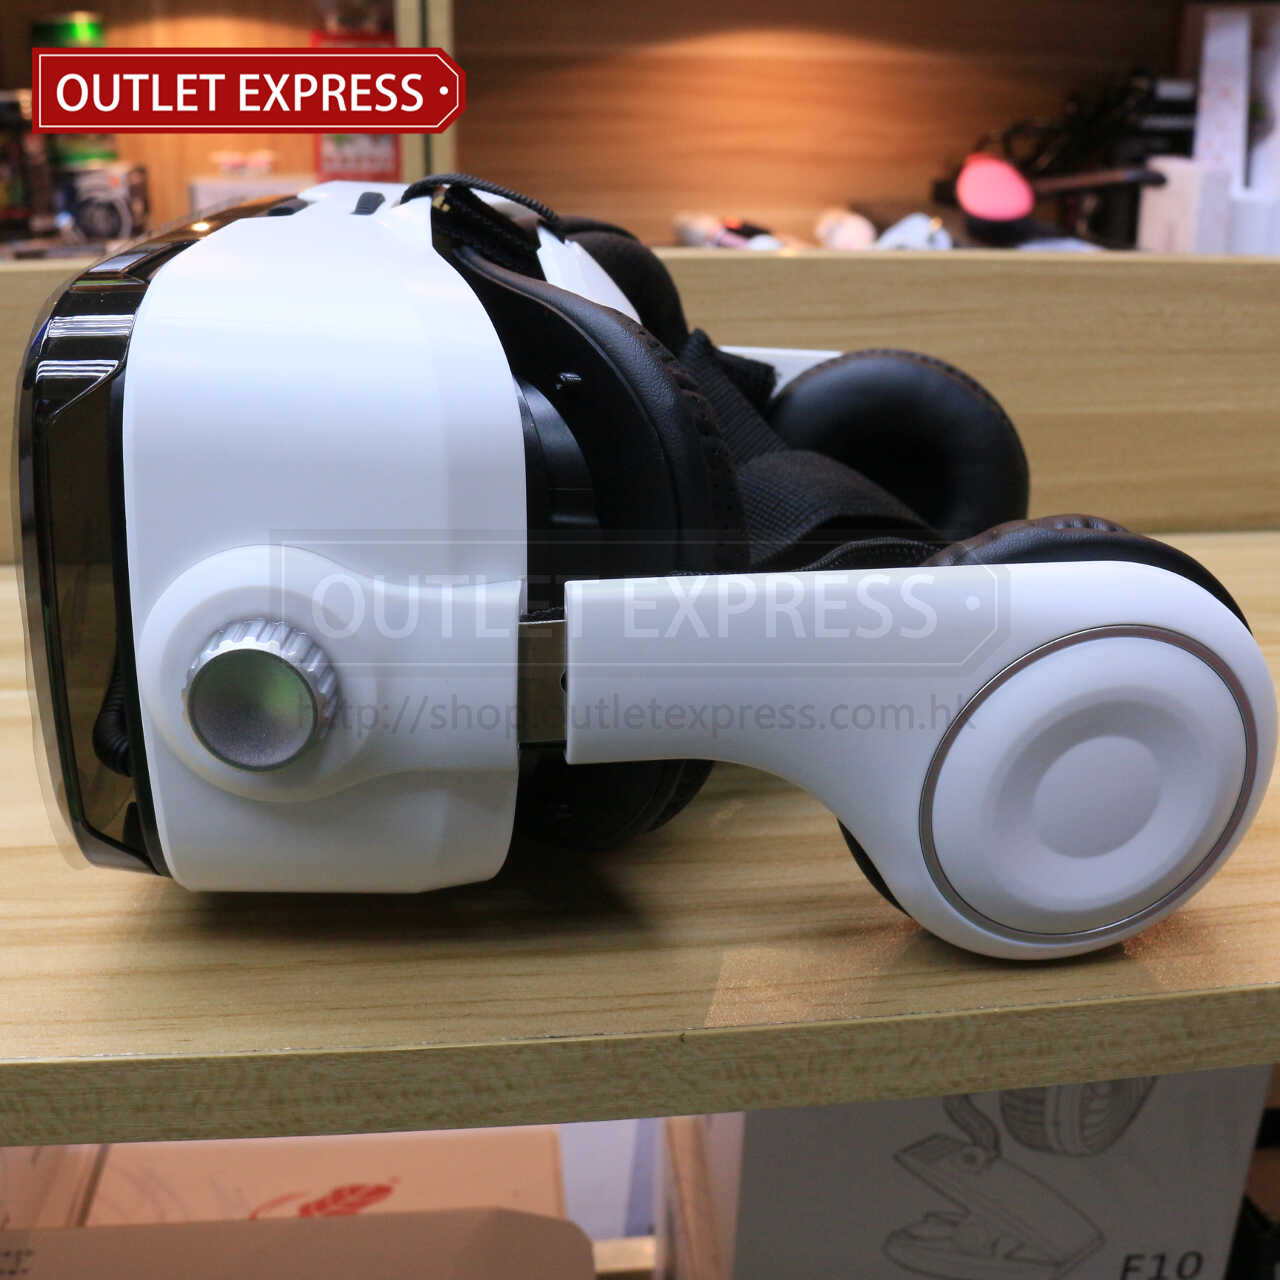 小宅魔鏡Z4 VR虛擬實境眼鏡 側面圖- Outlet Express HK生活百貨城實拍相片